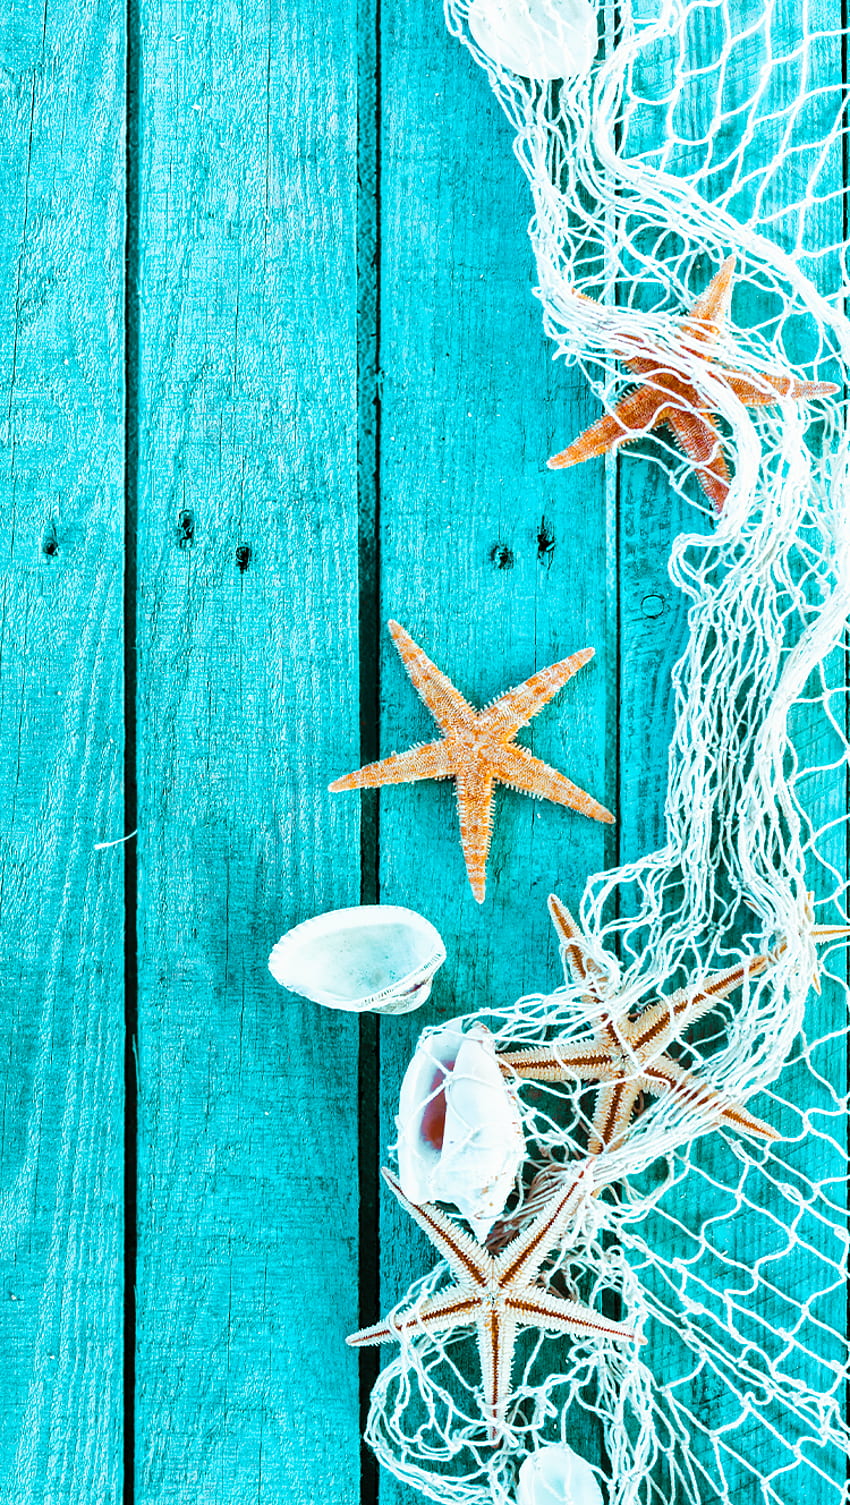 Ƒ↑TAP DAN DAPATKAN APLIKASINYA! Art Creative Sea Star Blue Wood Shell iPhone 6 . Papeis de parede, Papel de parede de verão, Papel de parede praia wallpaper ponsel HD